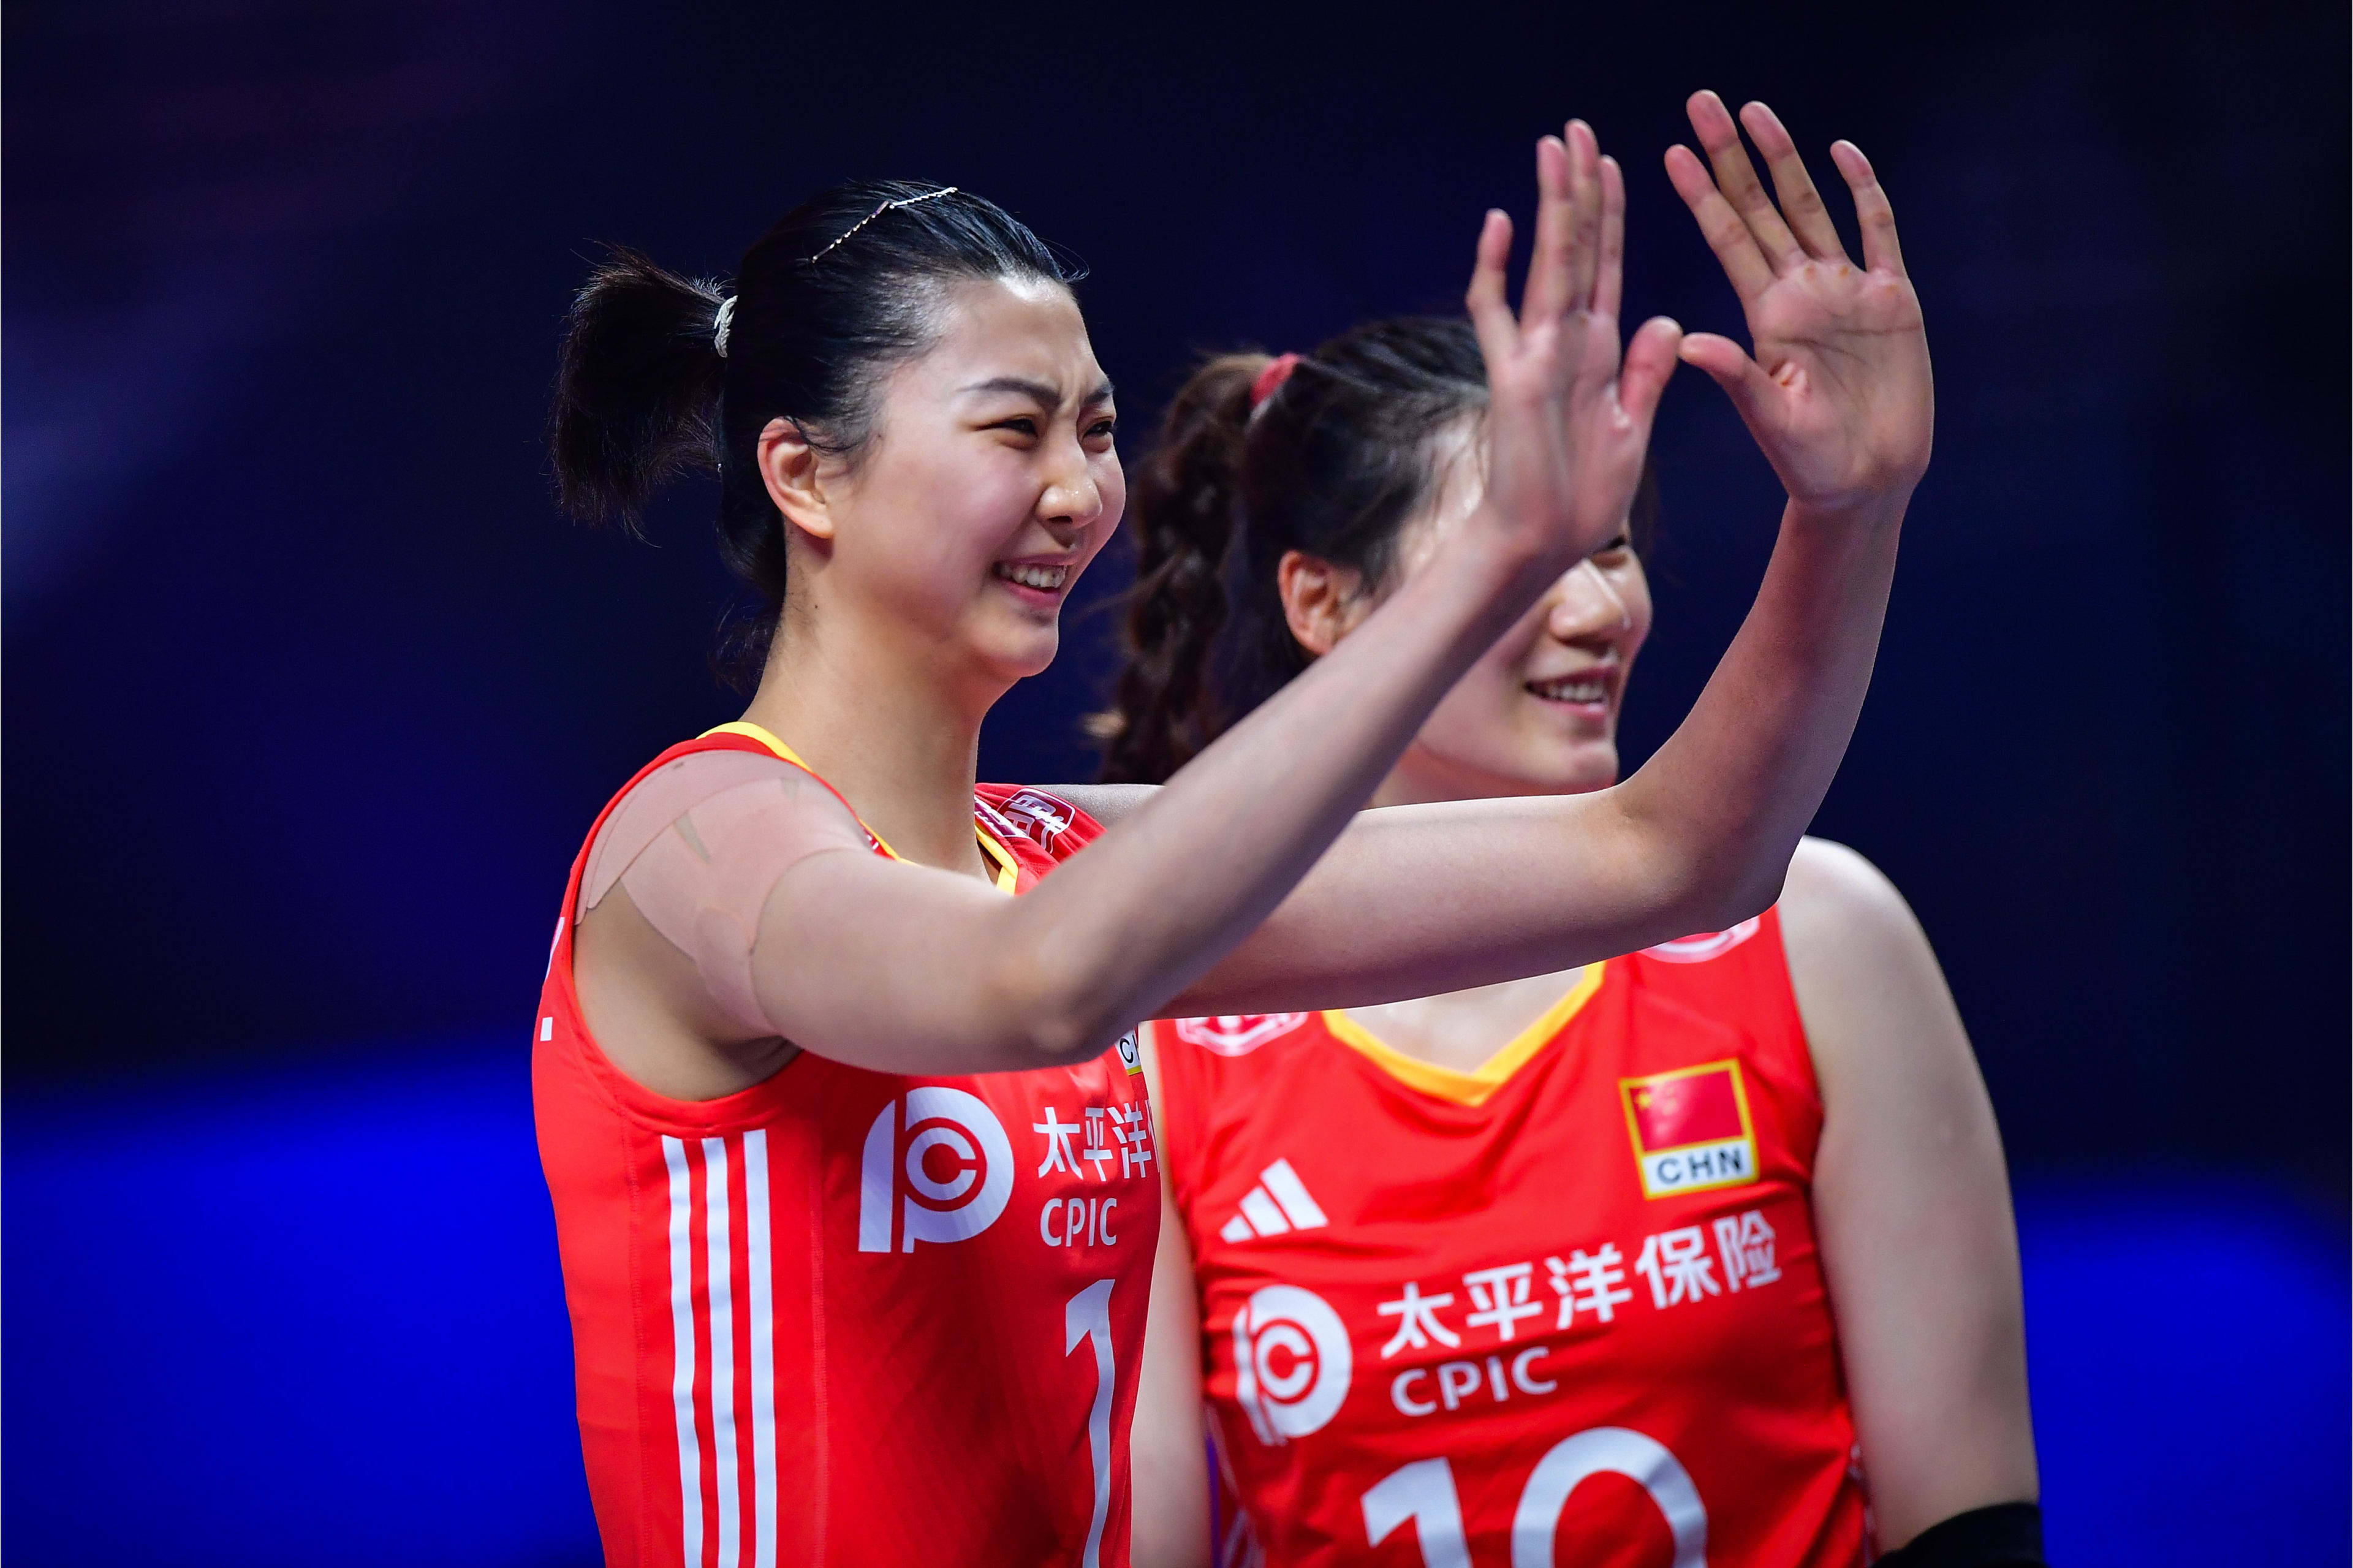 中国女排27岁2米巨头蜕变,攻拦一体太强:迈向世界级